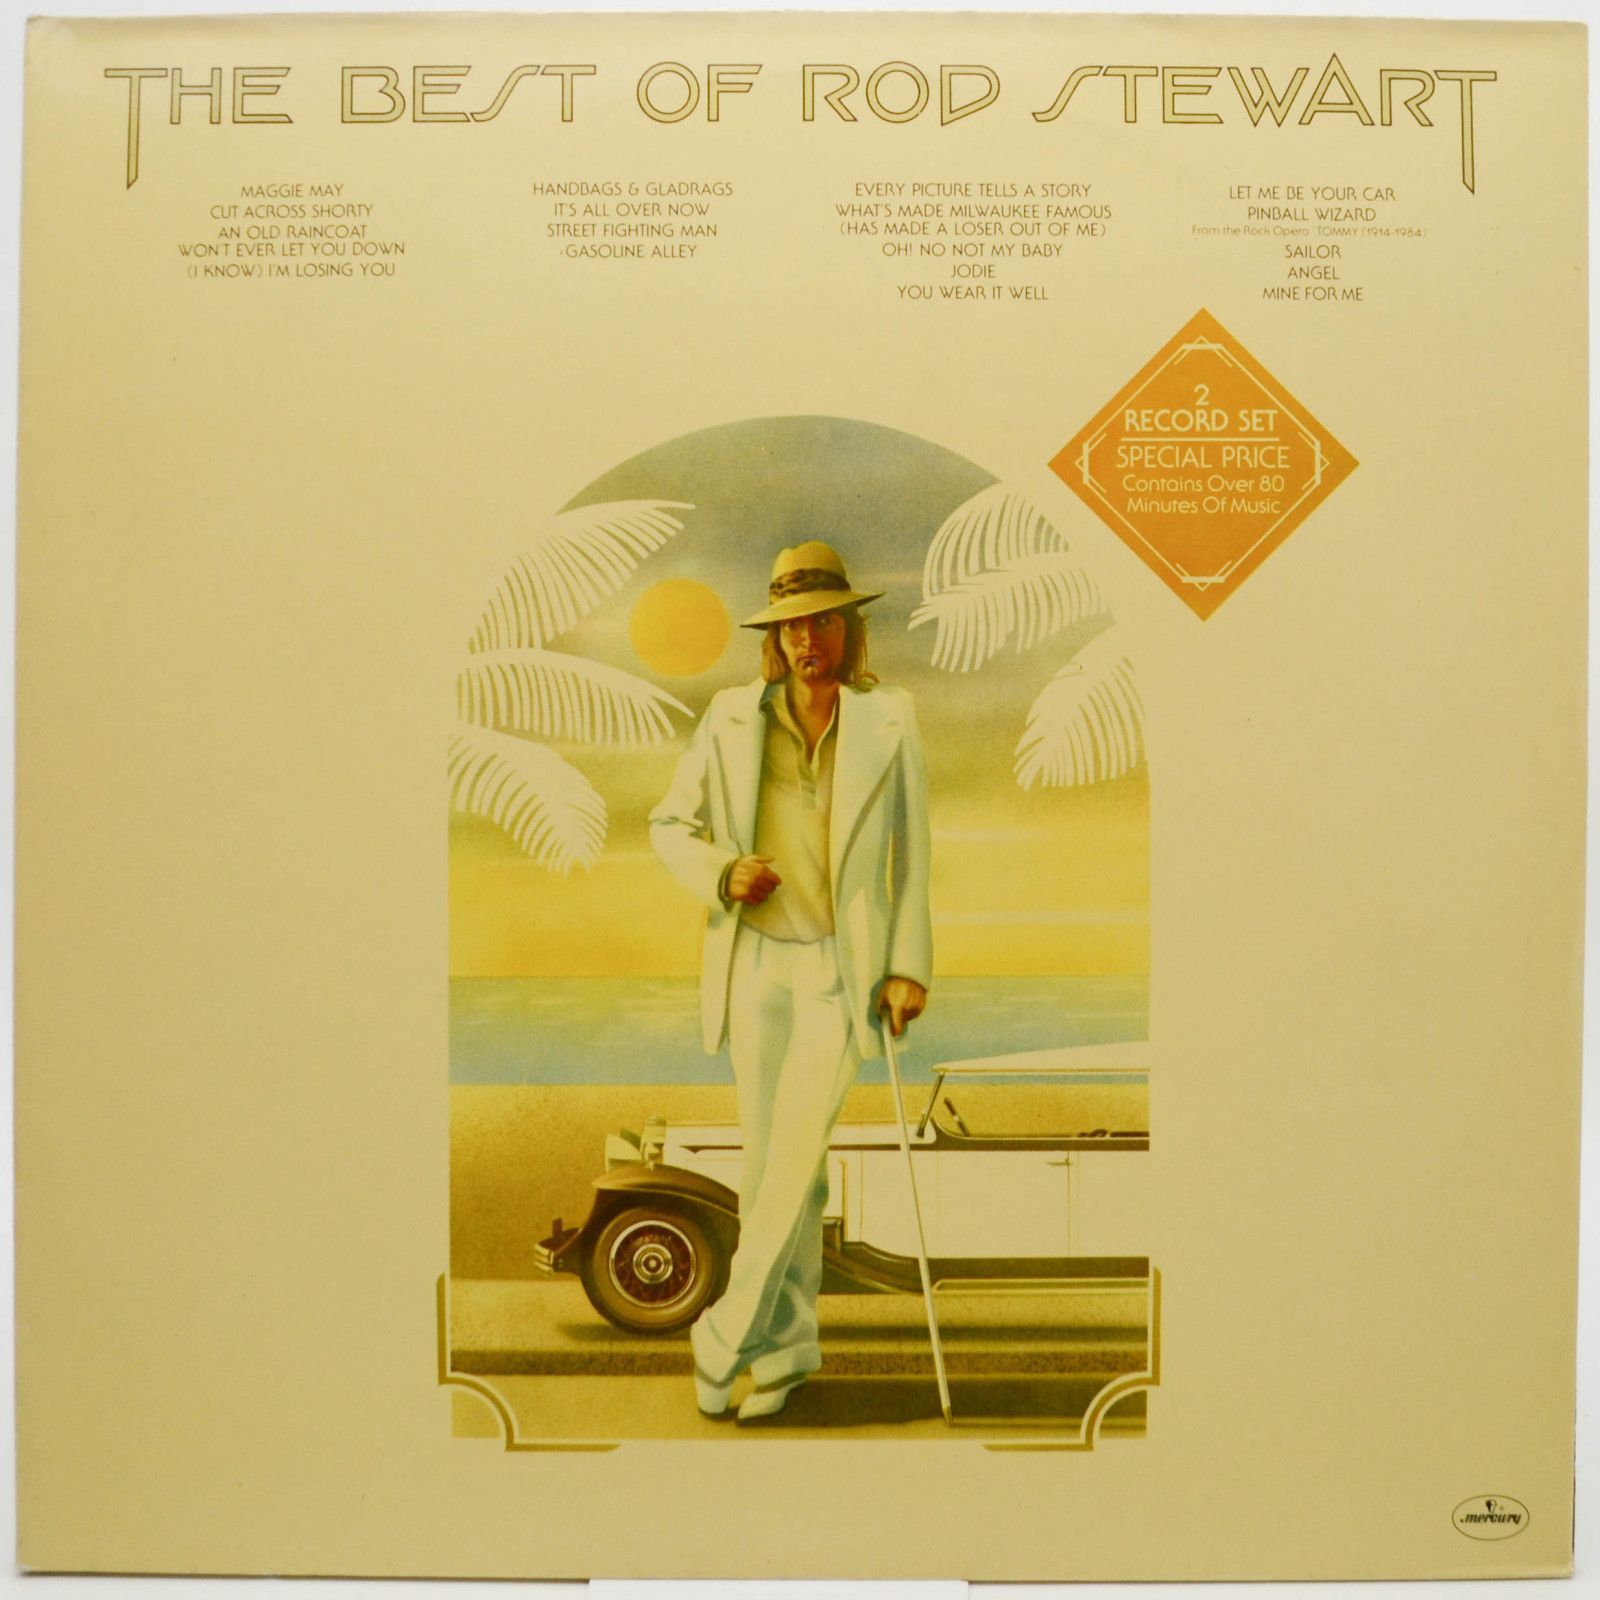 Rod Stewart — The Best Of Rod Stewart (2LP), 1977